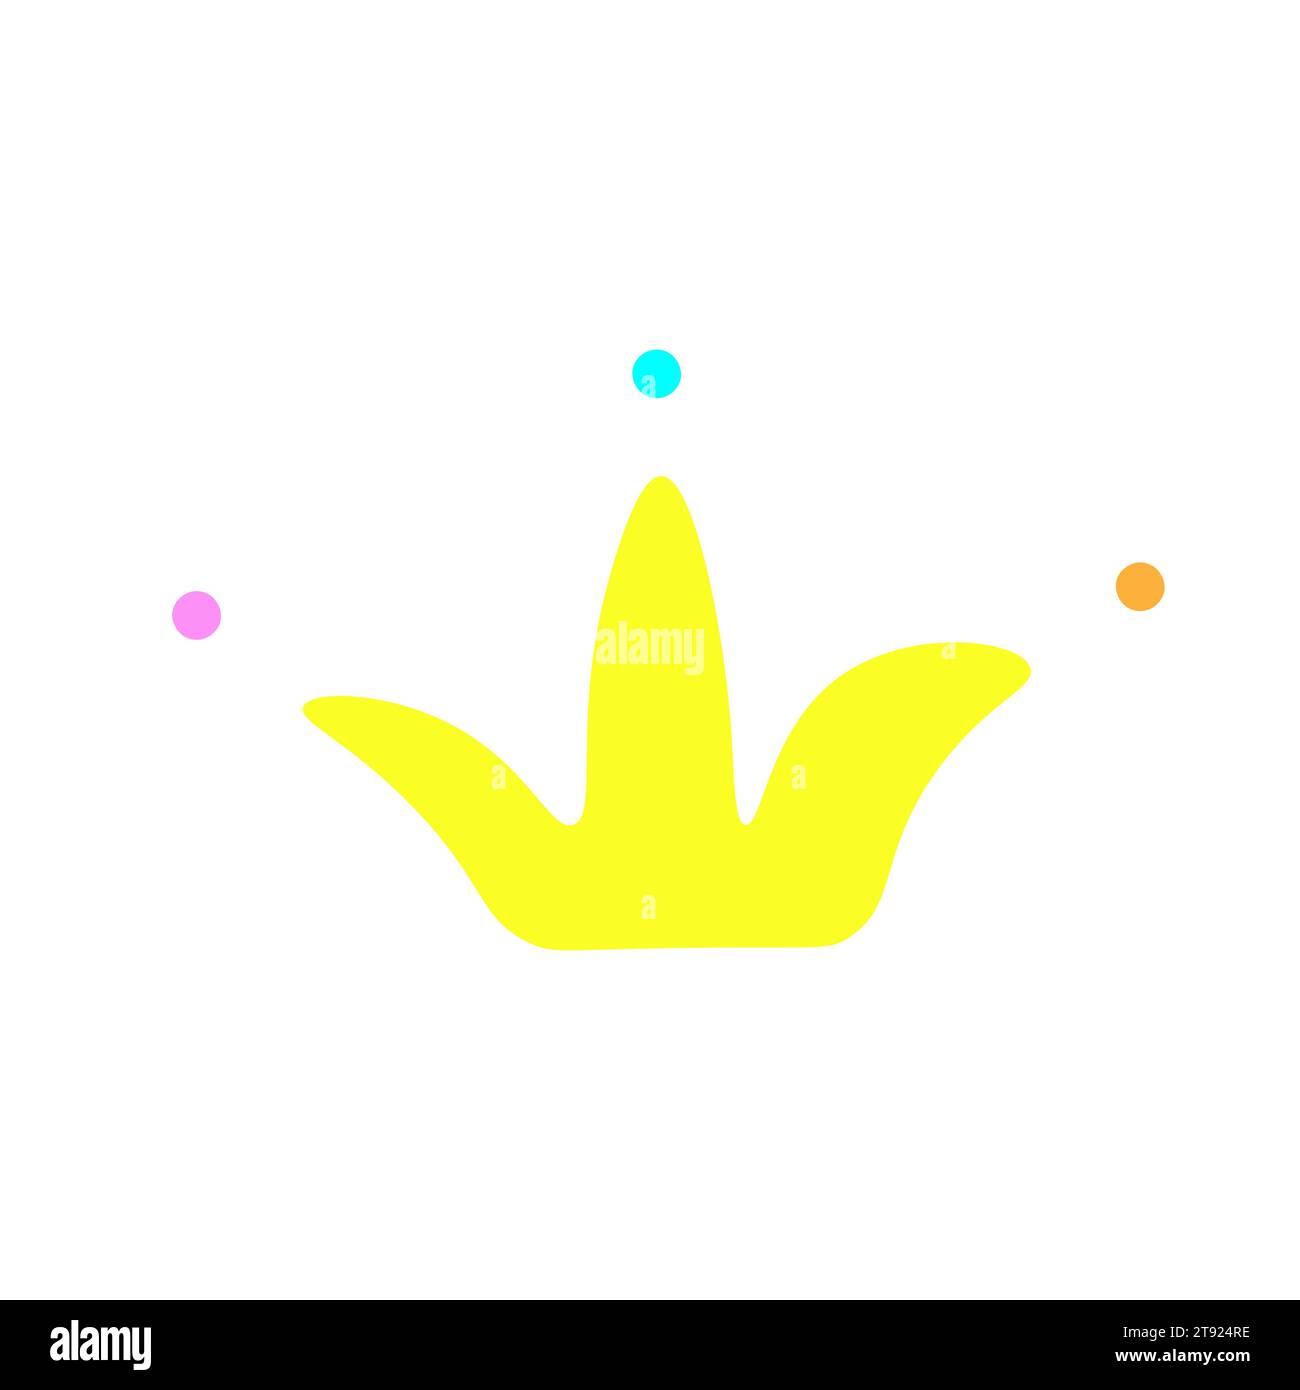 Illustration isolée colorée de vecteur avec icône mignonne de couronne d'or. Concept avec logo plat dessiné à la main - symbole de la famille royale et de l'autorité du roi Illustration de Vecteur